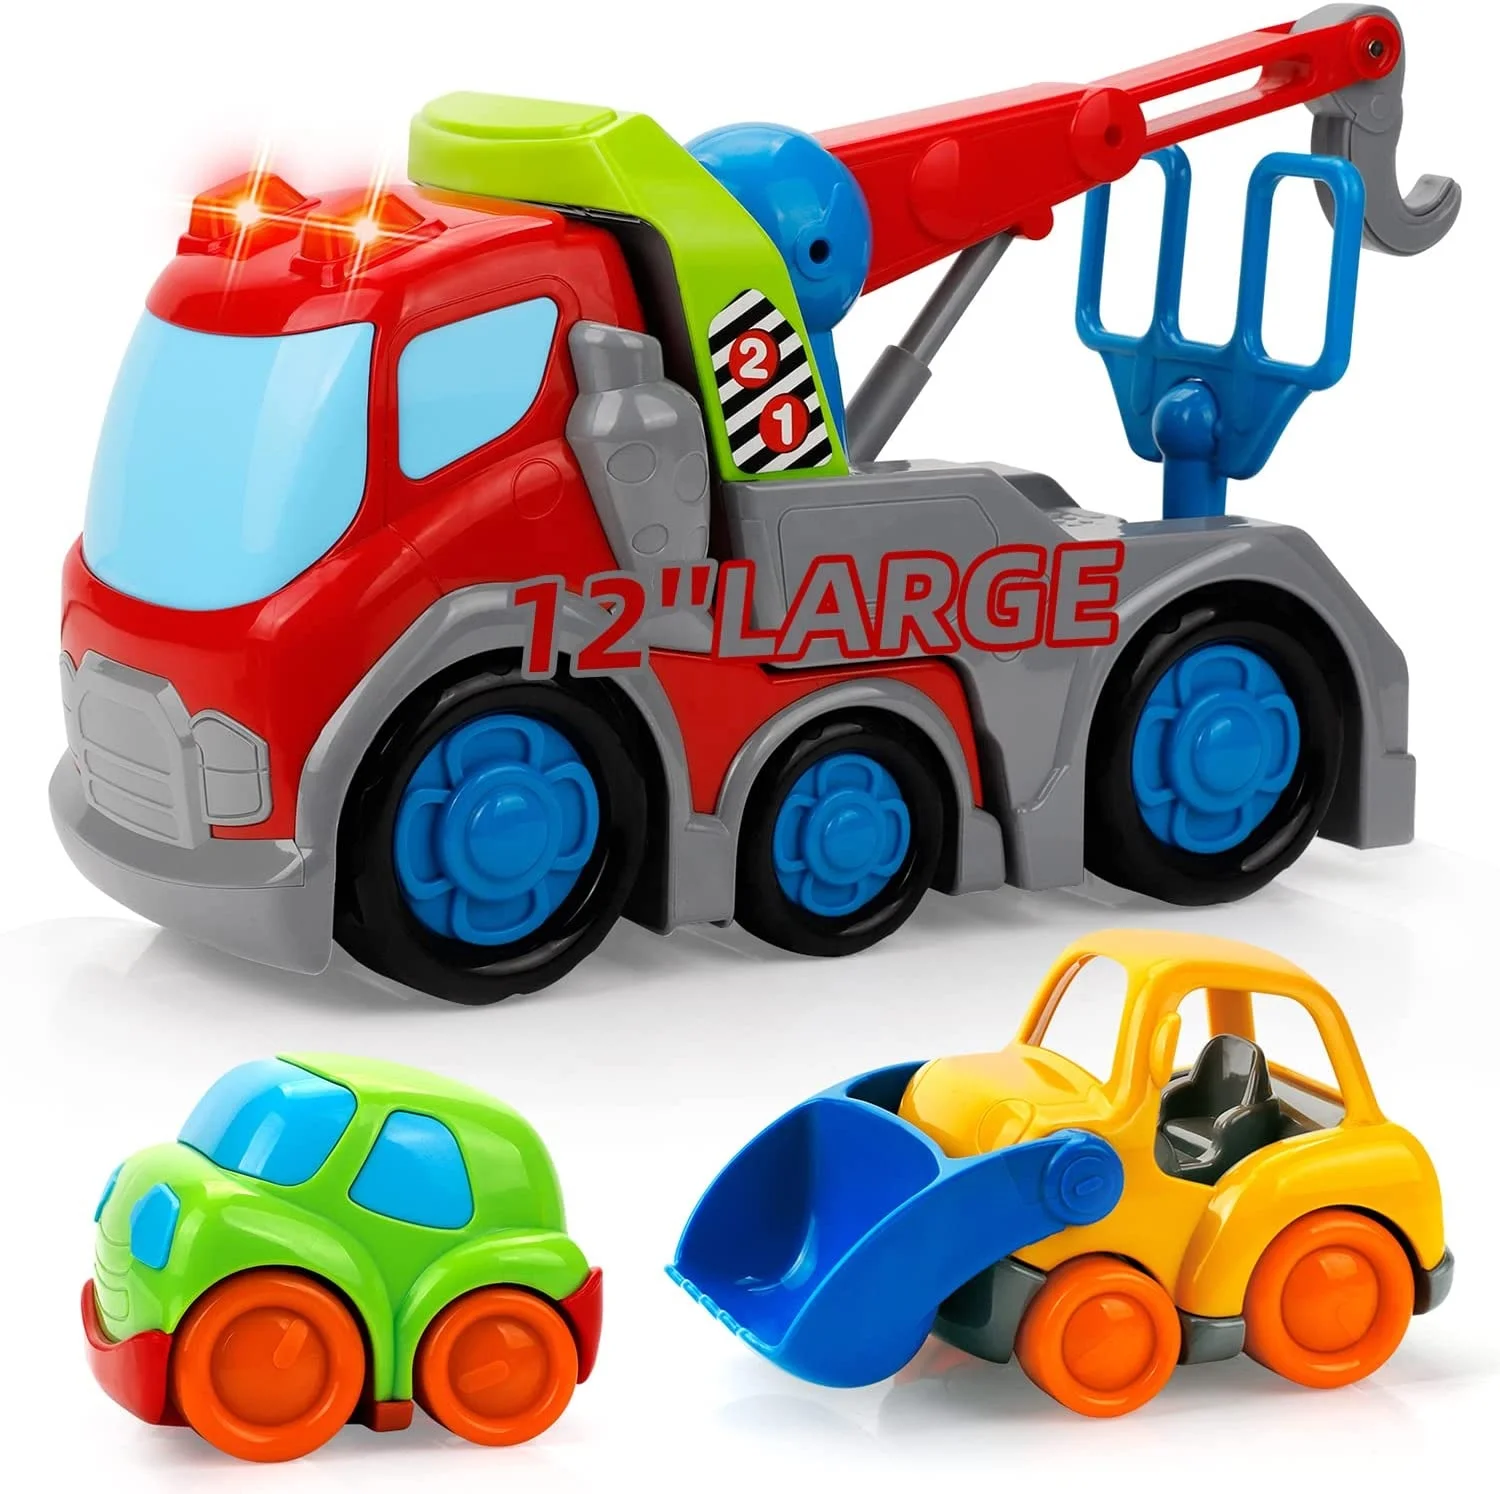 Kiddy Go ! Crane Toy Set